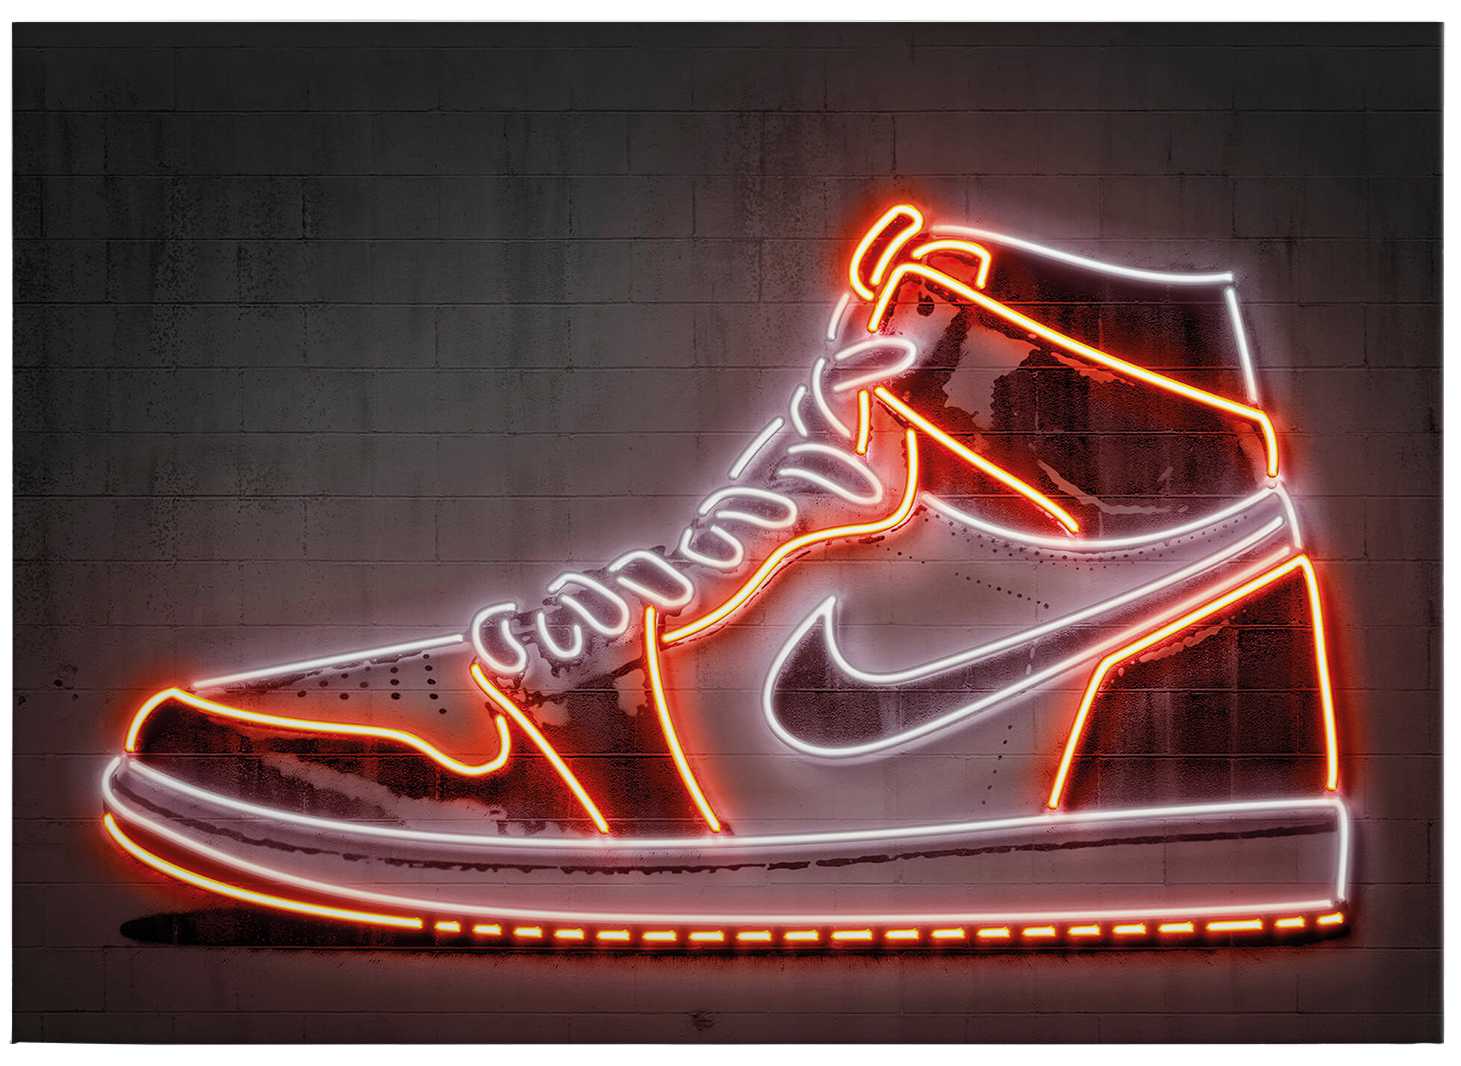             Quadro su tela Neon "Sneaker" di Mielu - 0,70 m x 0,50 m
        